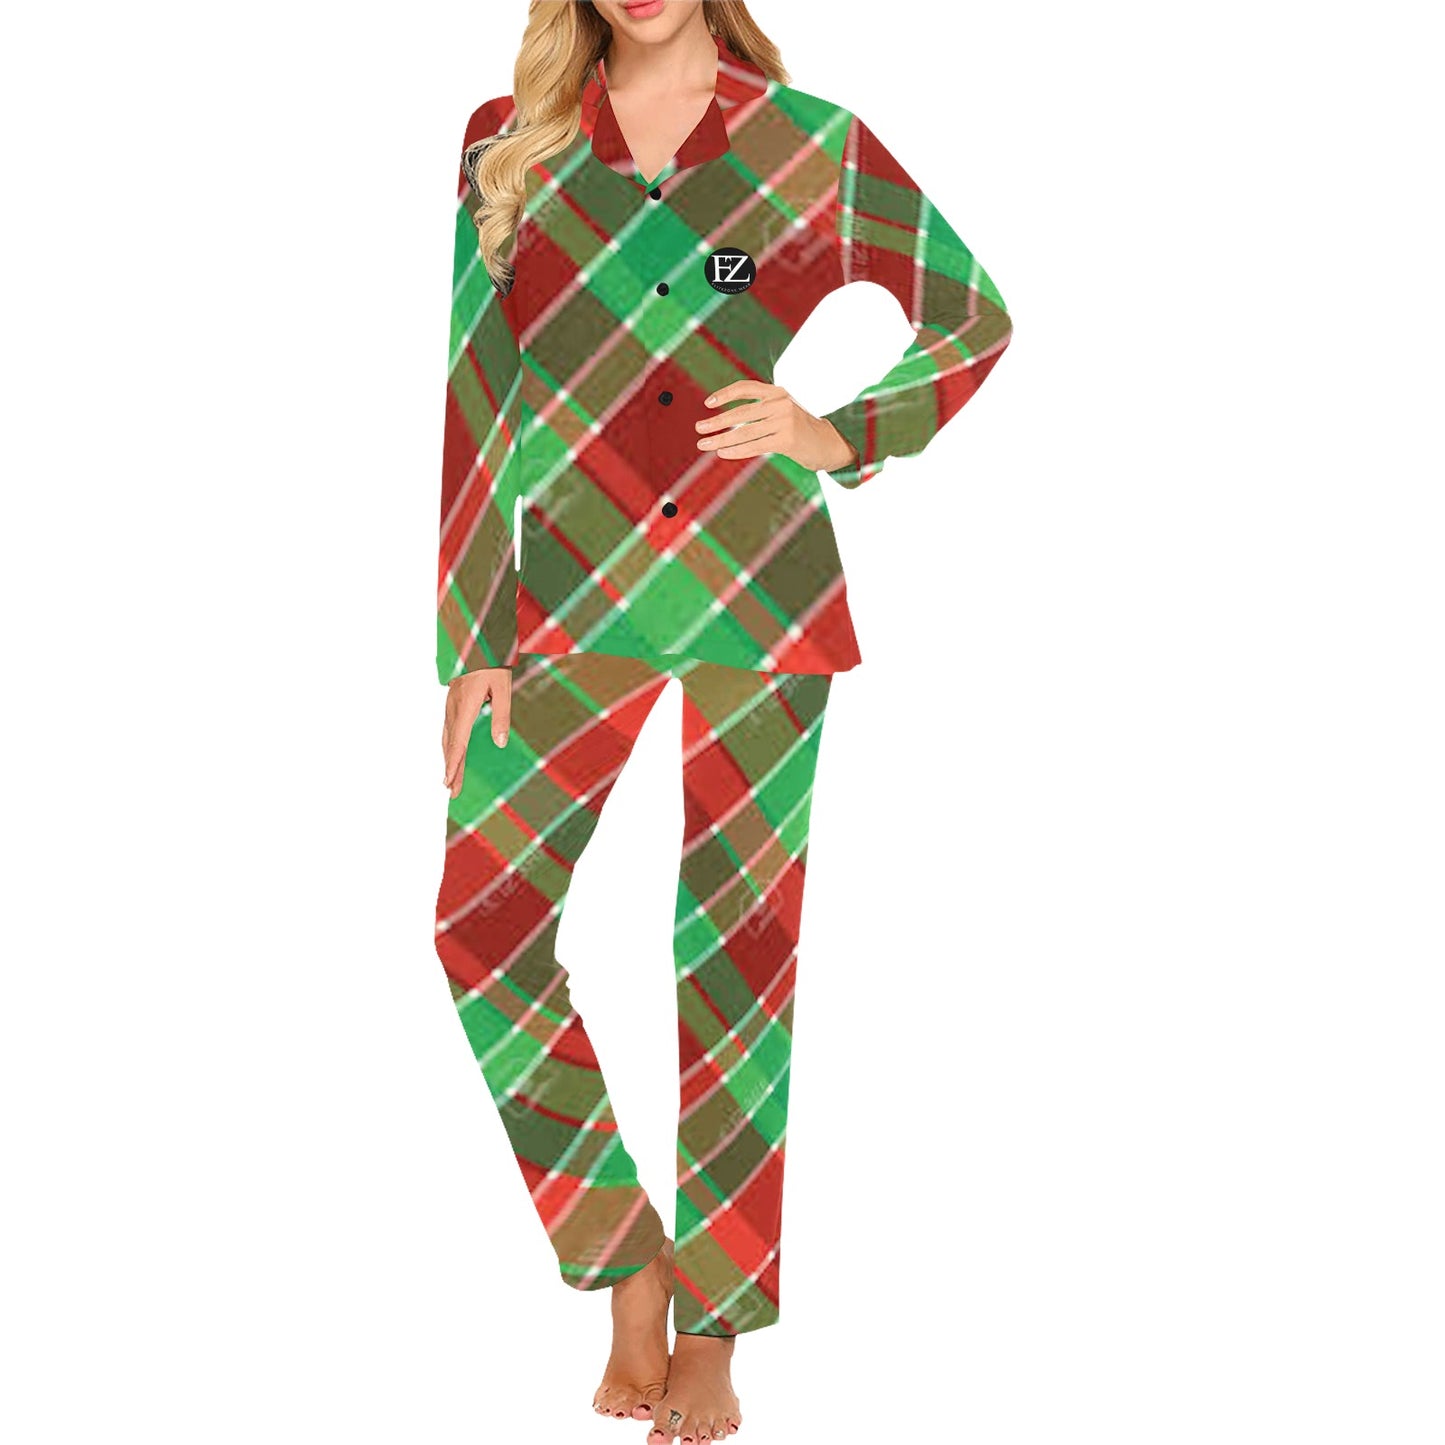 fz women's christmas pyjamas